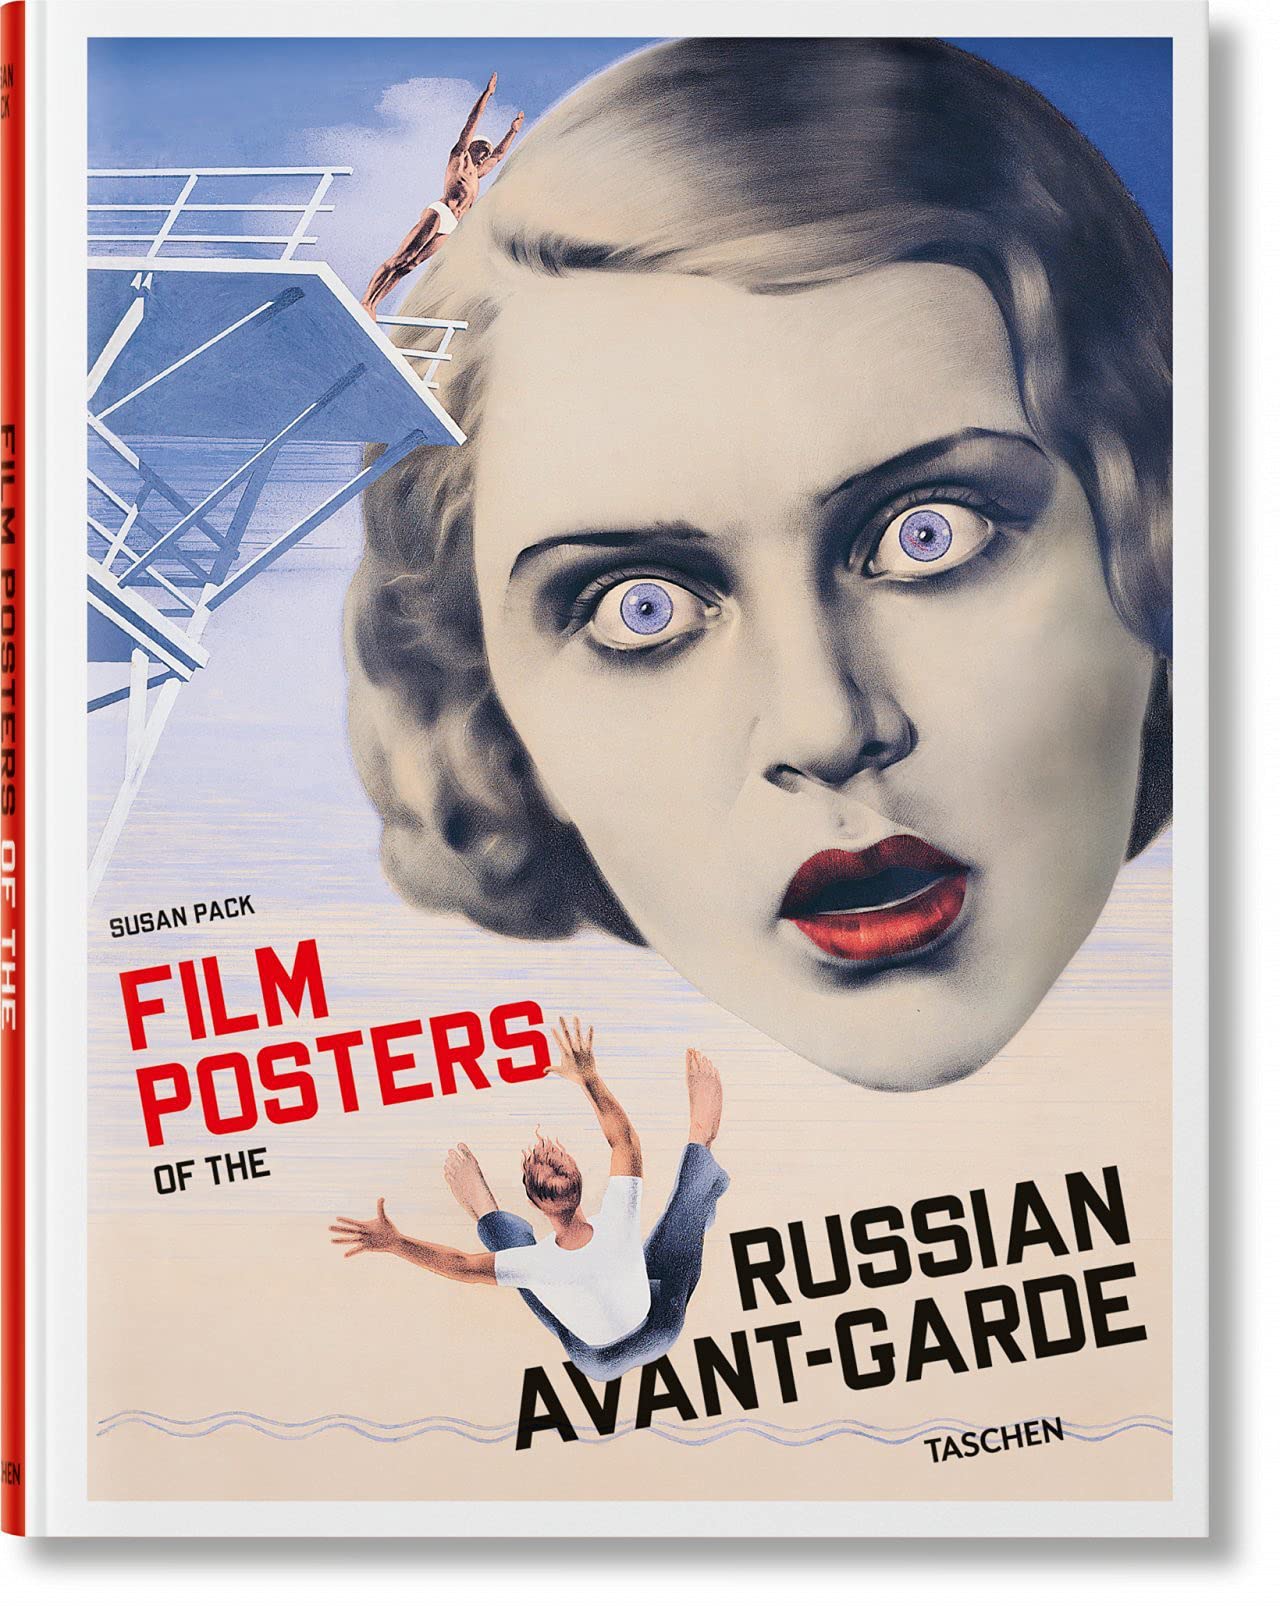 FILM POSTERS OF THE RUSSIAN AV